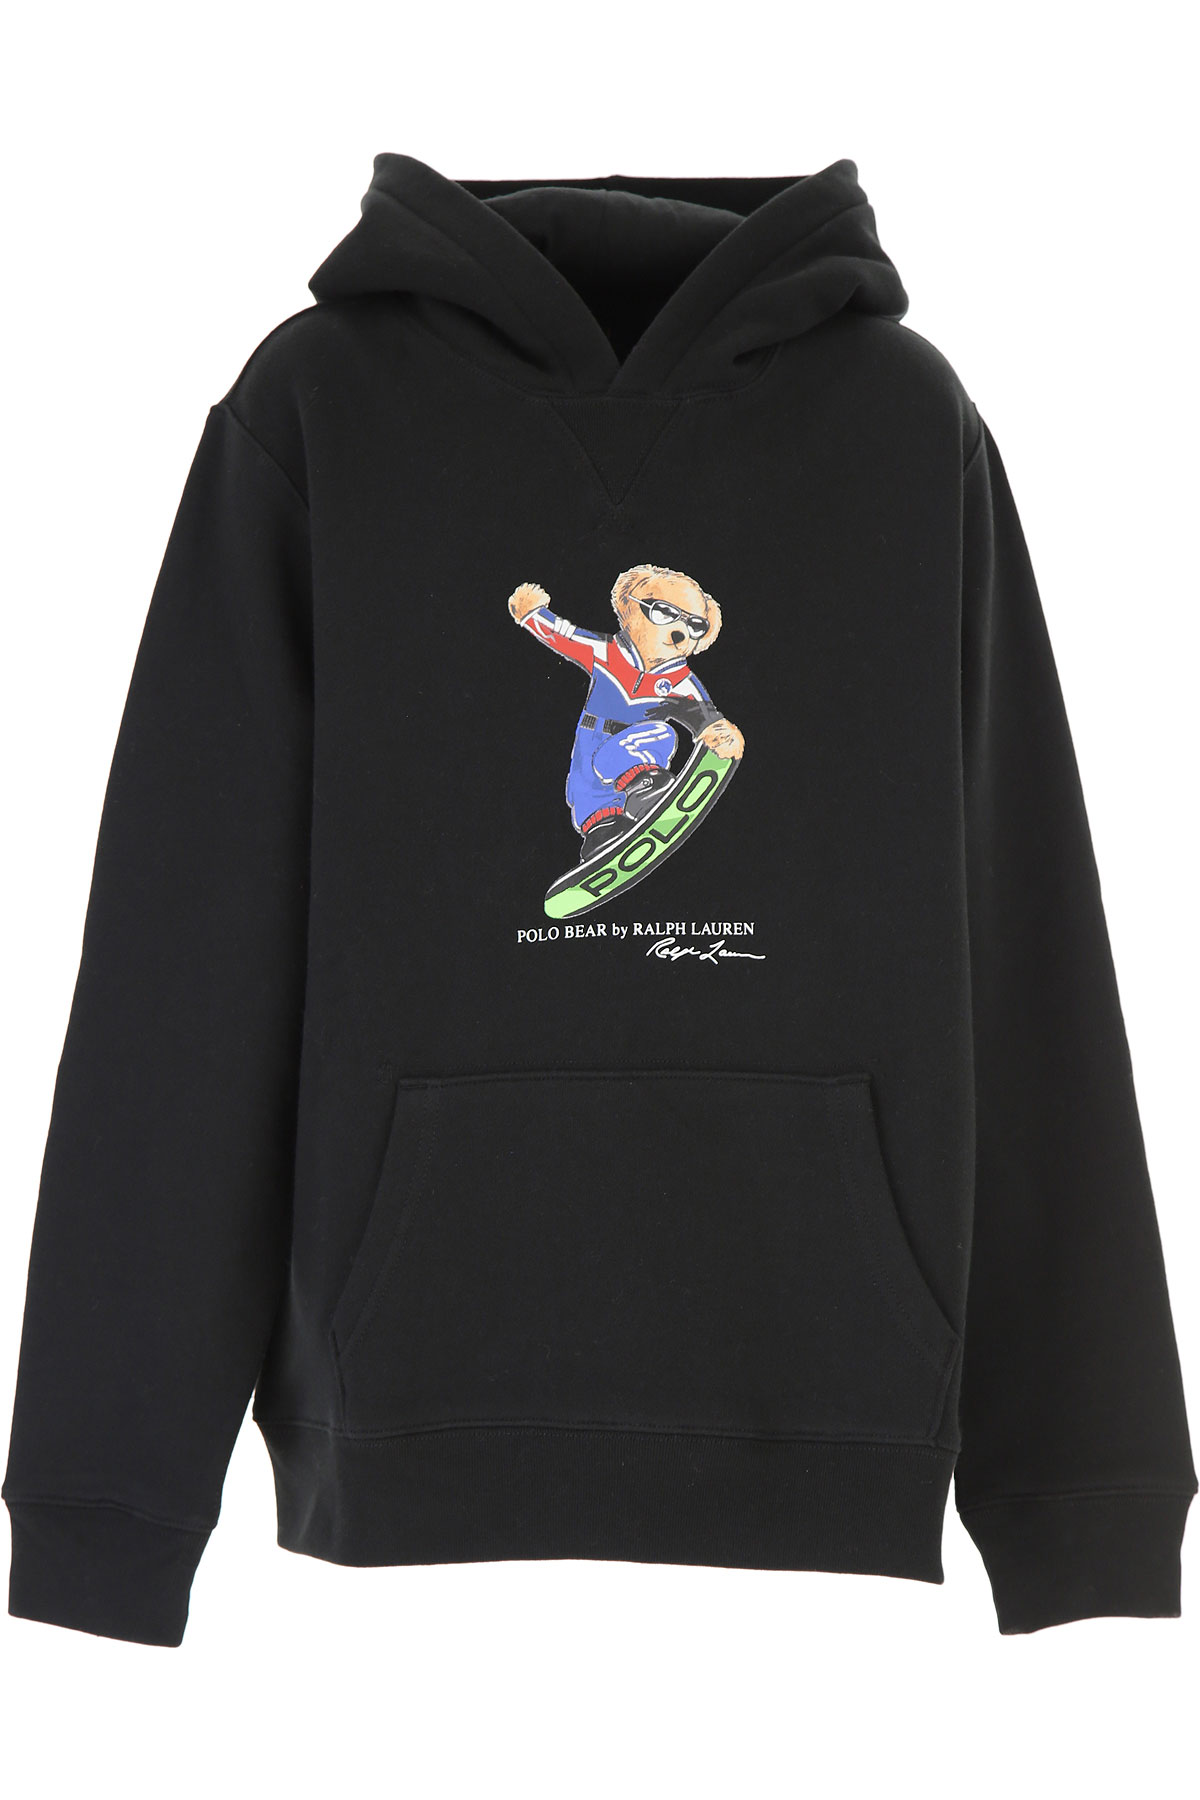 Ralph Lauren Kinder Sweatshirt & Kapuzenpullover für Jungen Günstig im Sale, Schwarz, Baumwolle, 2017, L S